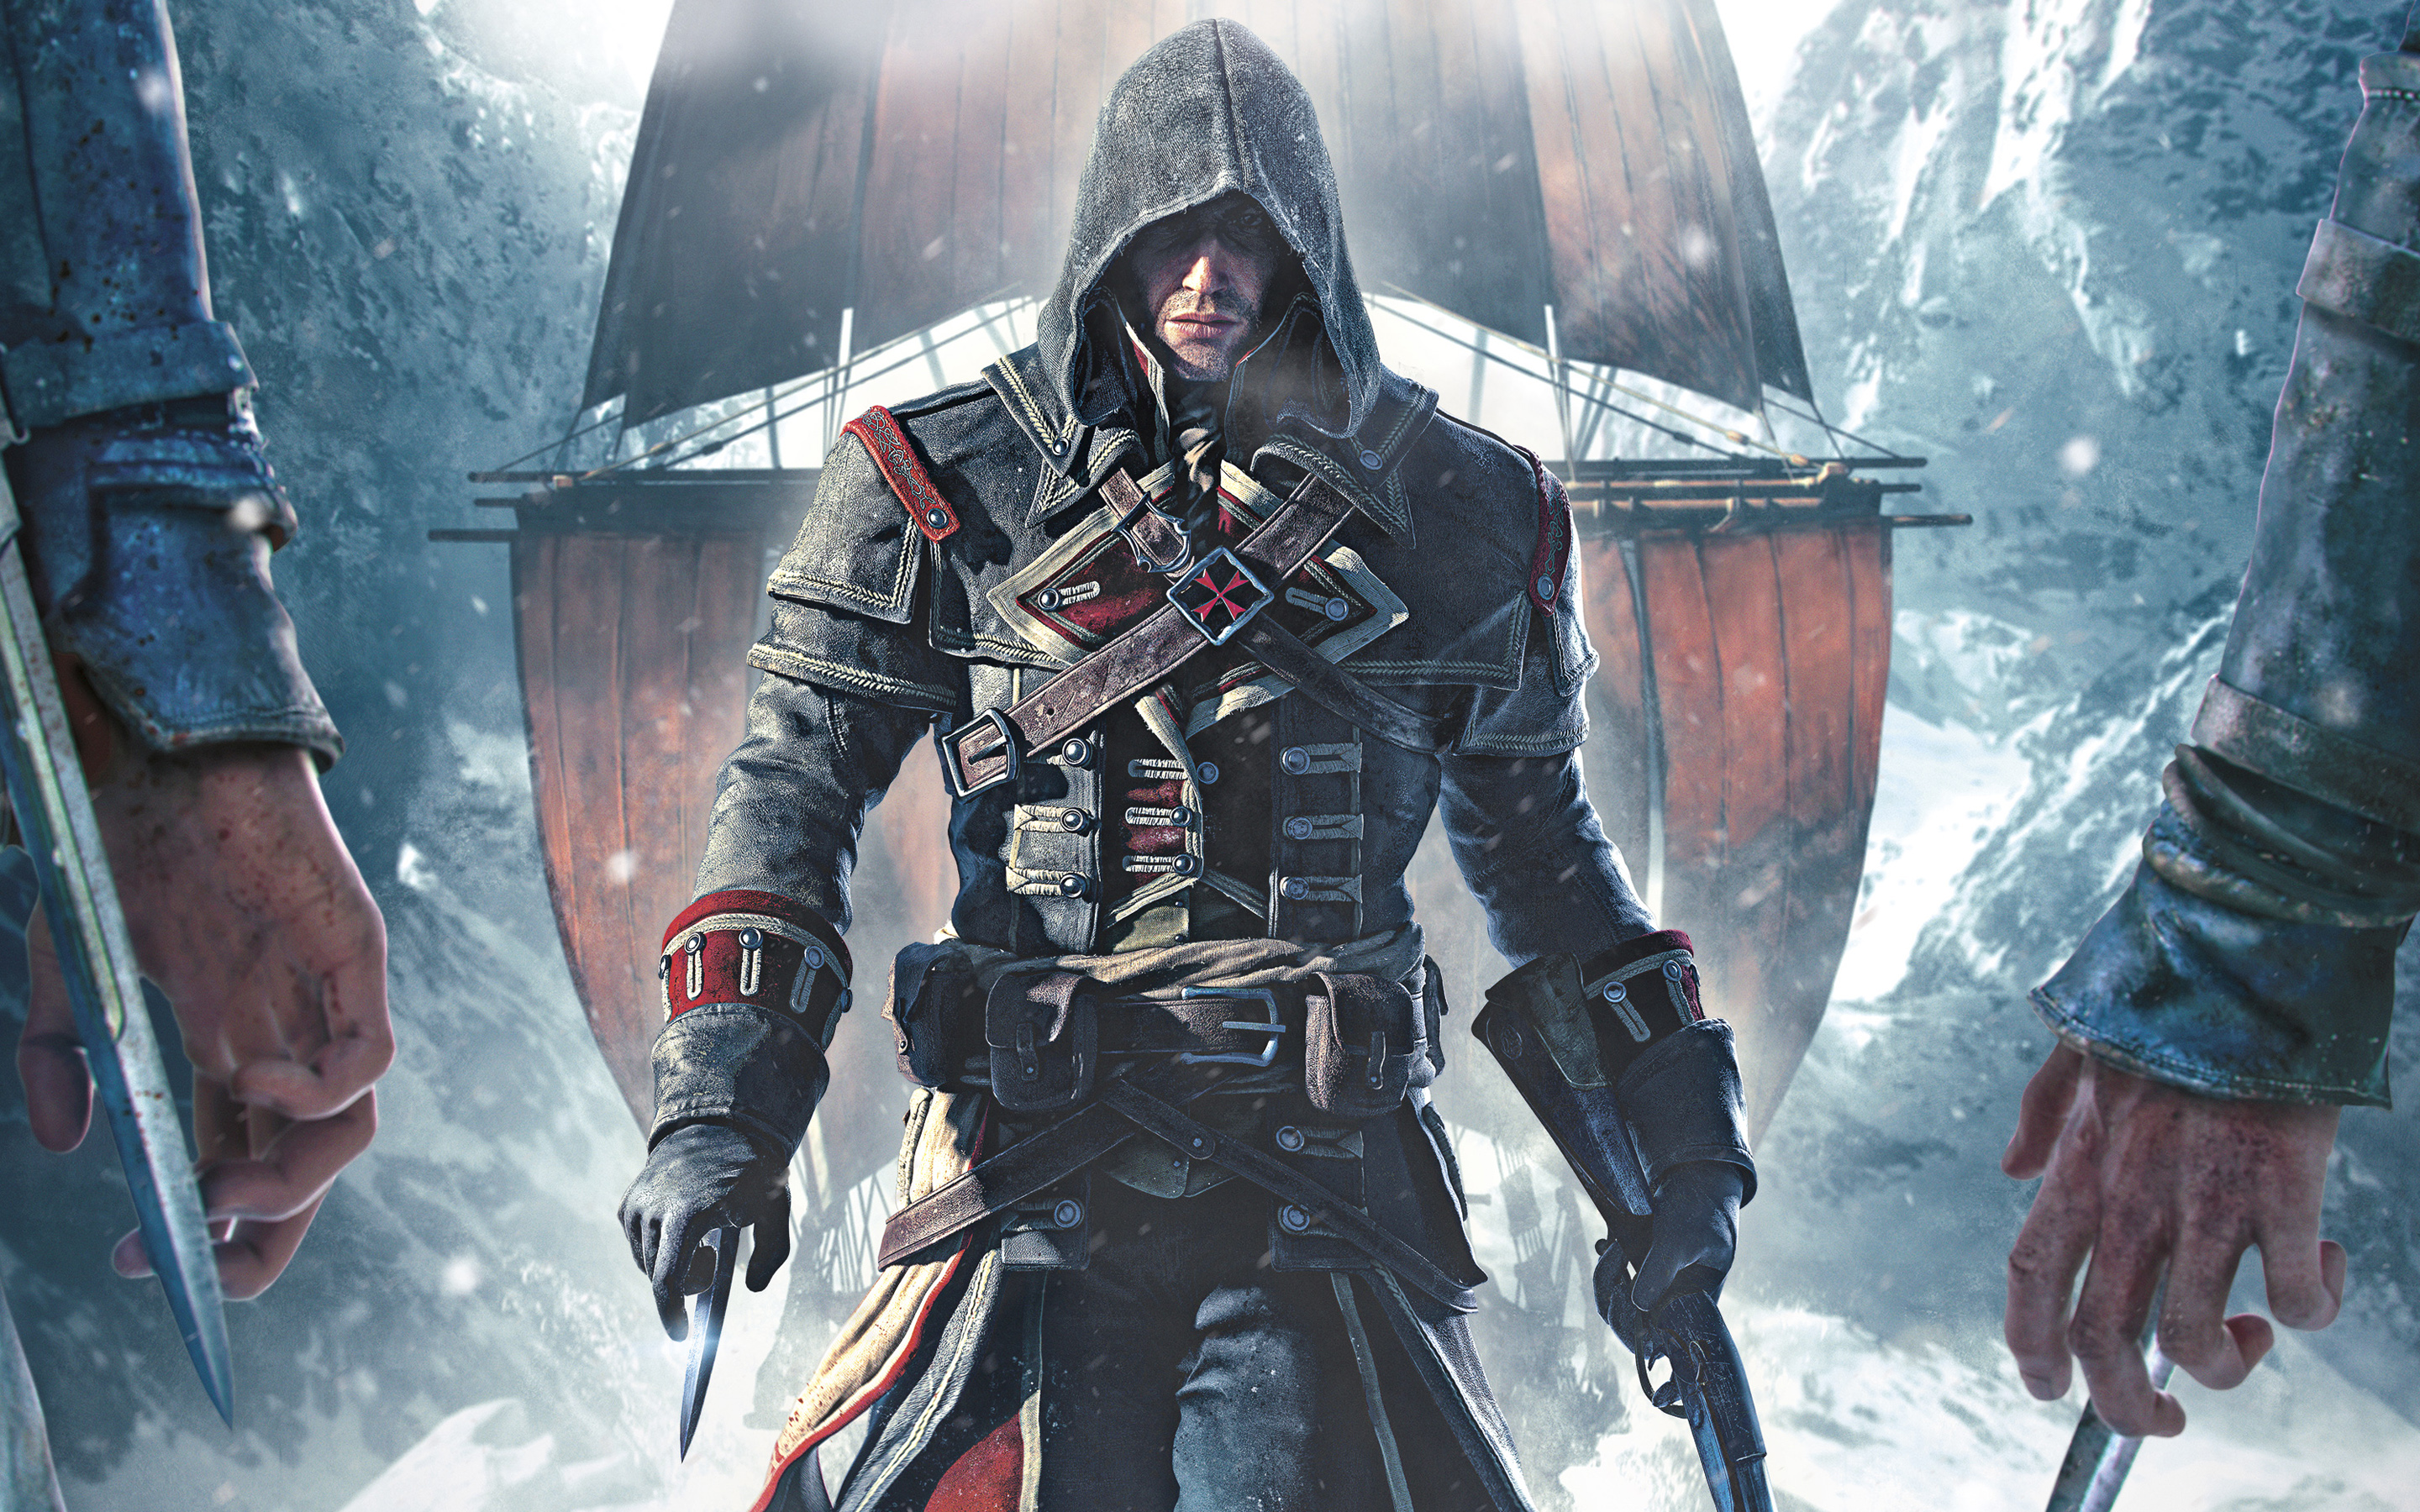 Fantastic Assassins Creed Wallpaper 40847 2880x1800 px